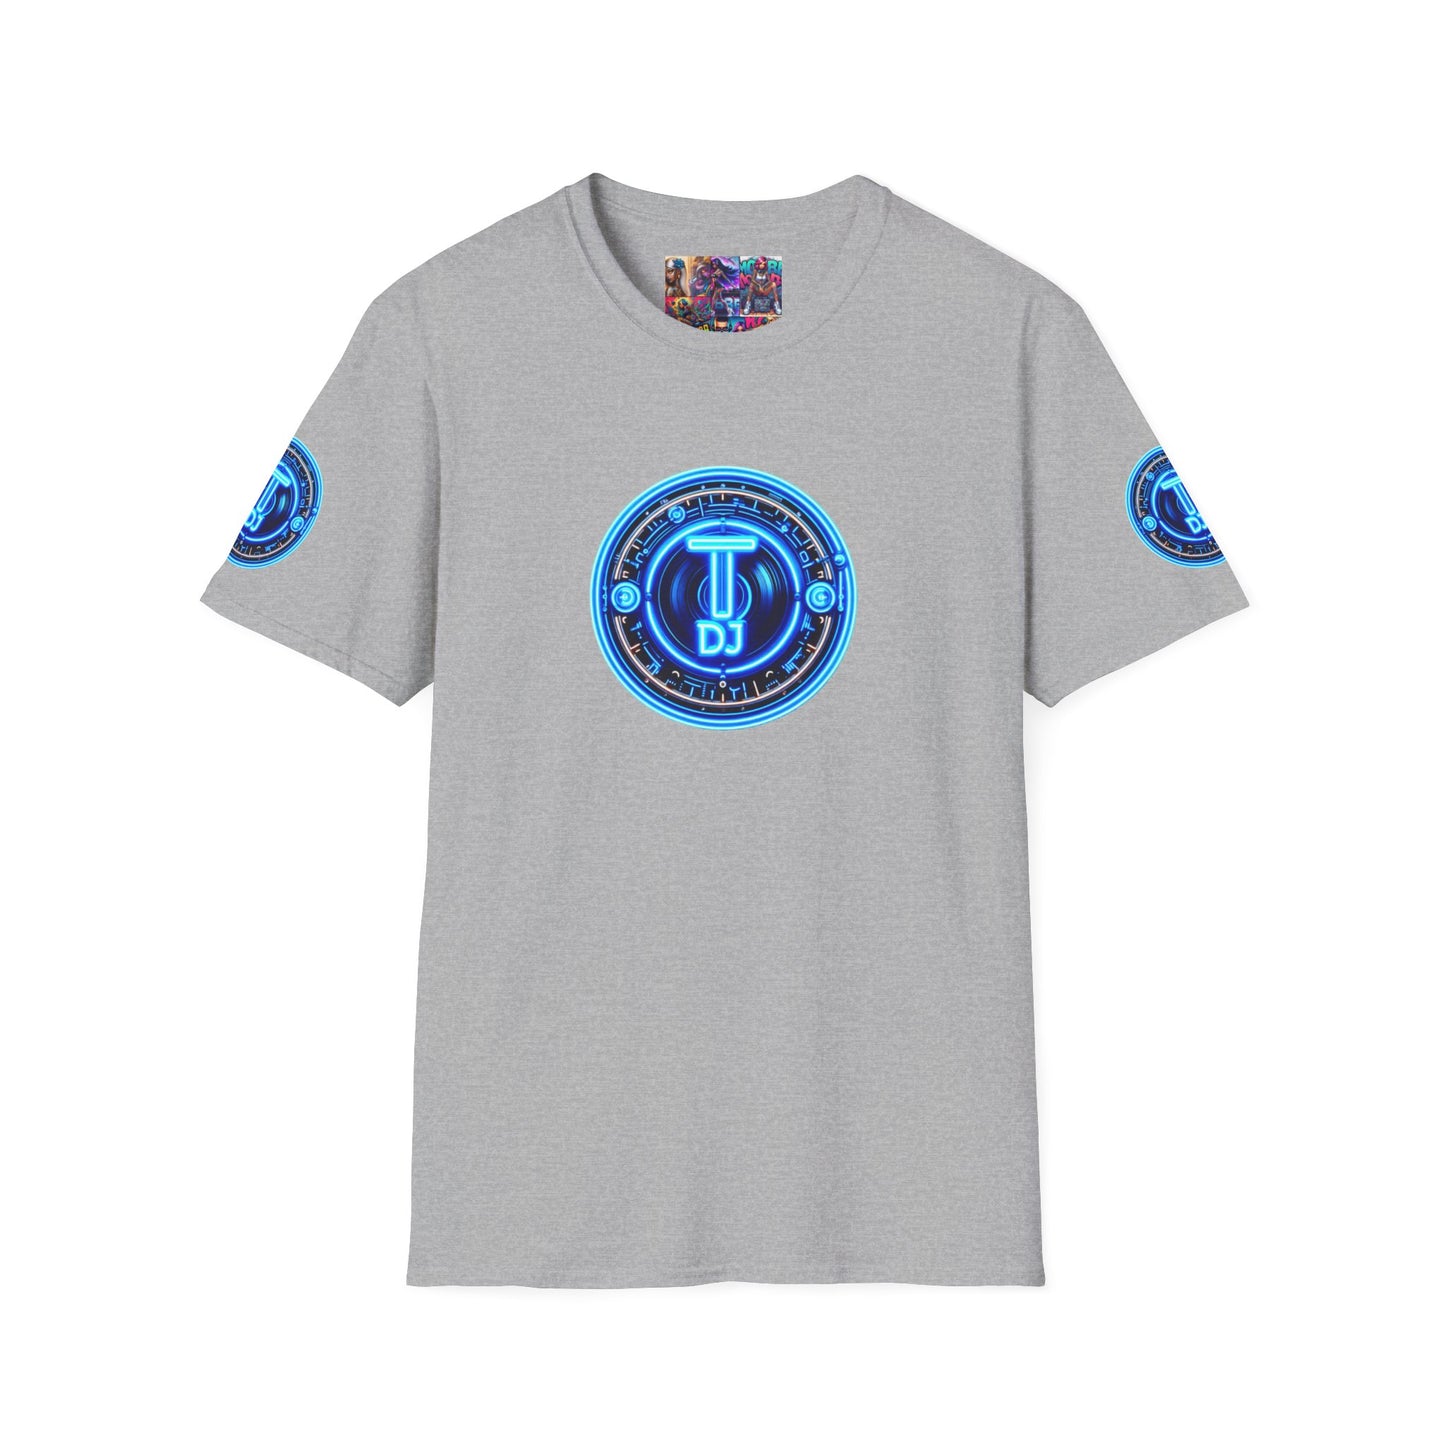 MDBTDJ#5 Unisex Softstyle T-Shirt Tattooed Dj's Limited Edition, T-Shirt, Tattooed Djs Shop